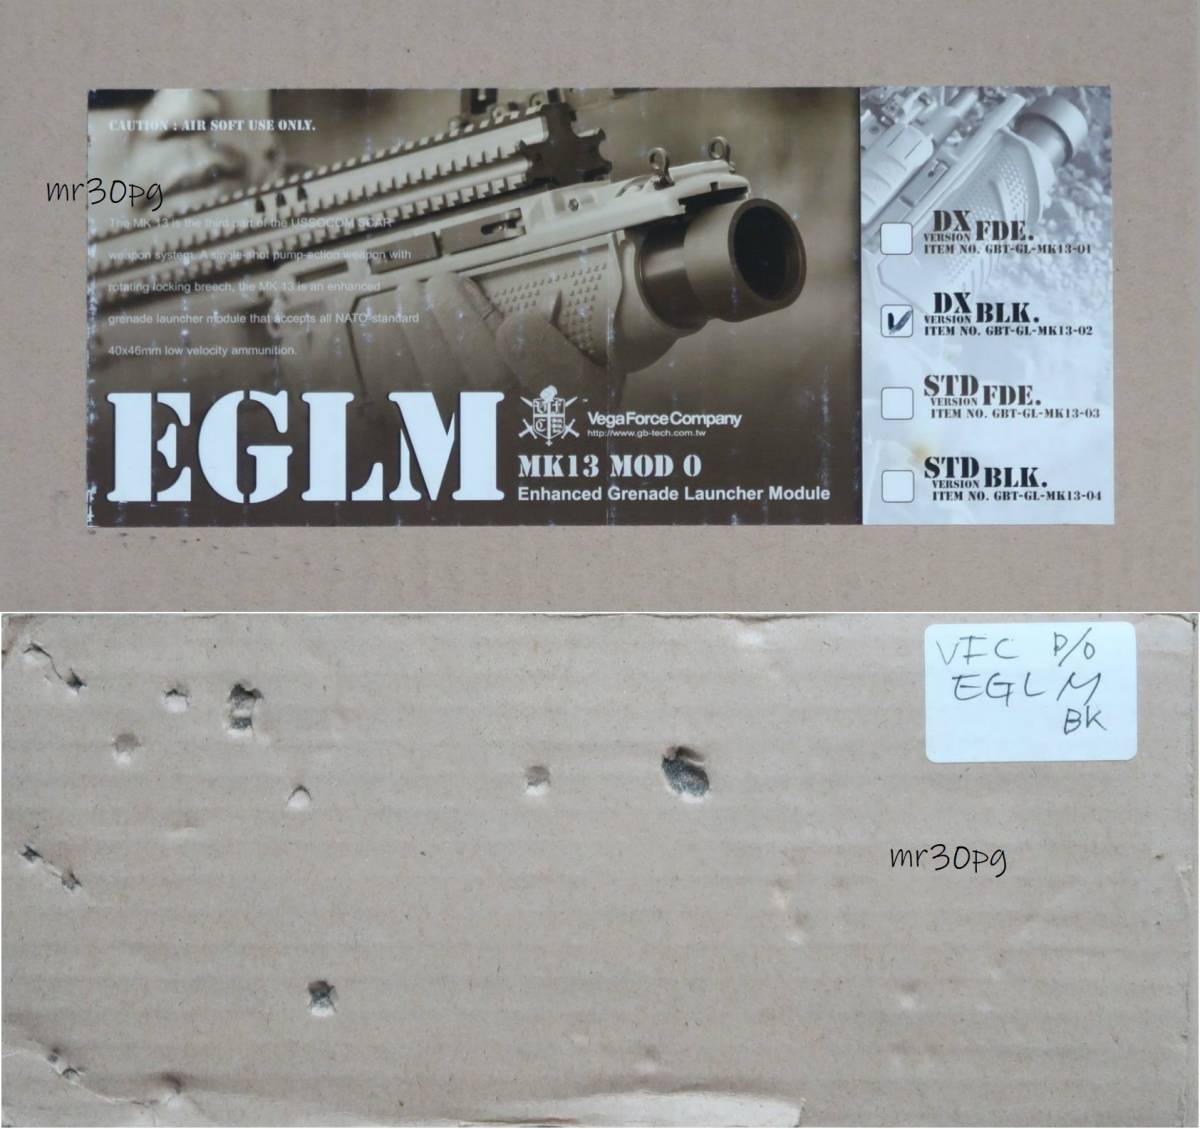 スタンドアローン 未使用品 VFC製 FN HERSTAL EGLM Mk13mod0 DX BK 40mmモスカート用グレネードランチャー SCAR-L/H対応 EFT/FN40GL/BATMAN_DX版。※箱の側面にBB弾の上に置いた痕あり